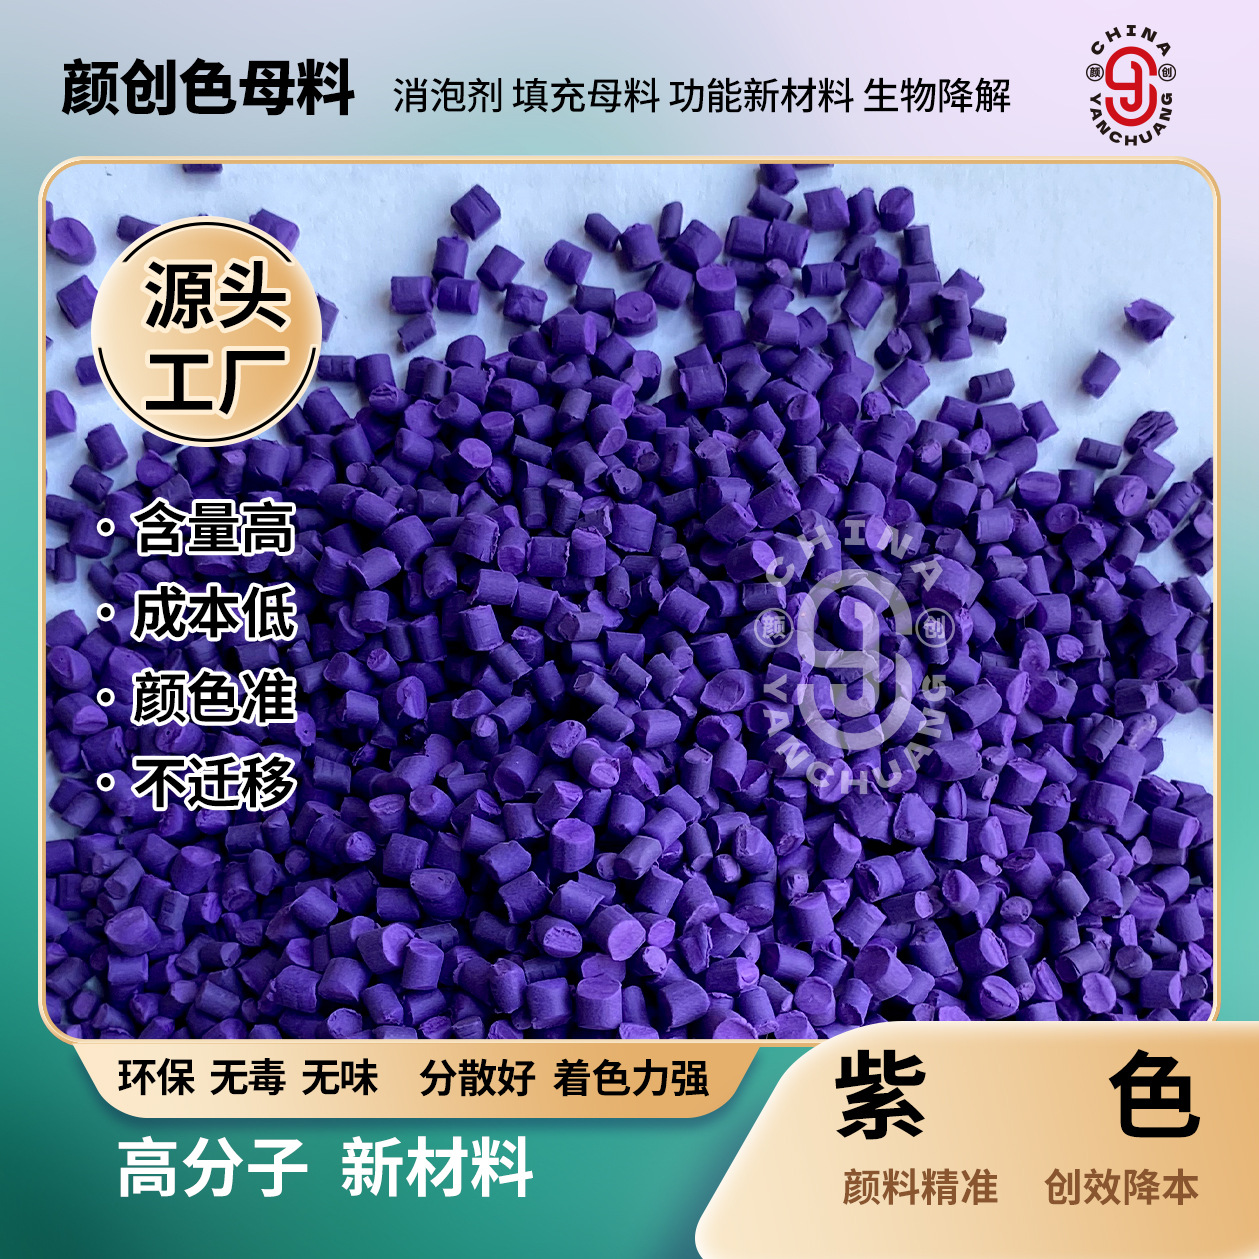 厂家优惠紫色母粒pe吹膜 紫色塑料颗粒 环保食品包装片材彩色母料